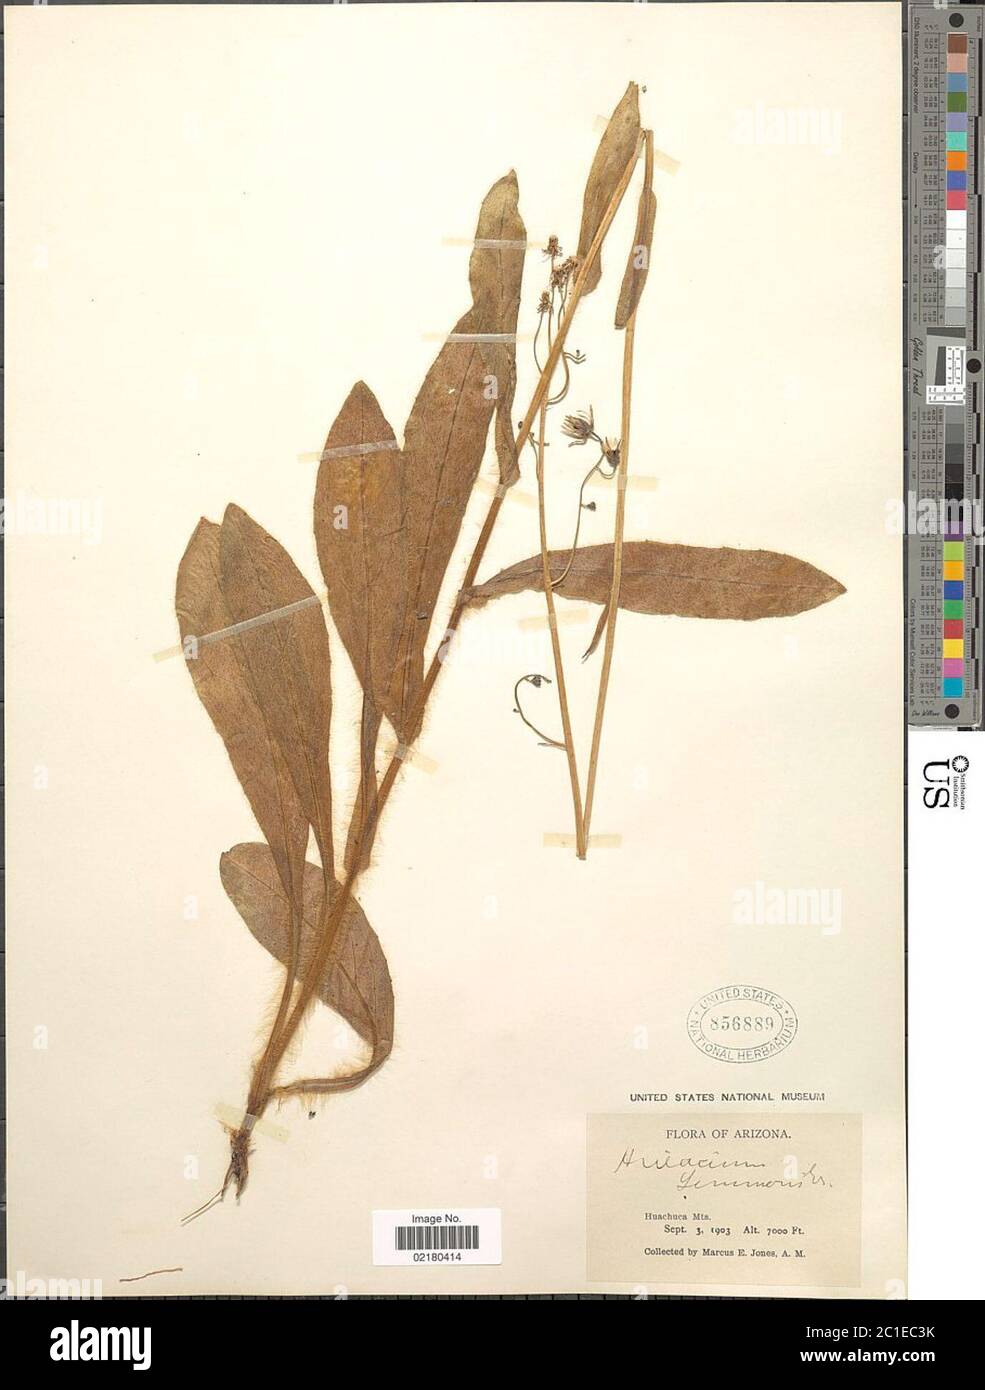 Hieracium lemmonii A Gray Hieracium lemmonii A Gray. Stock Photo